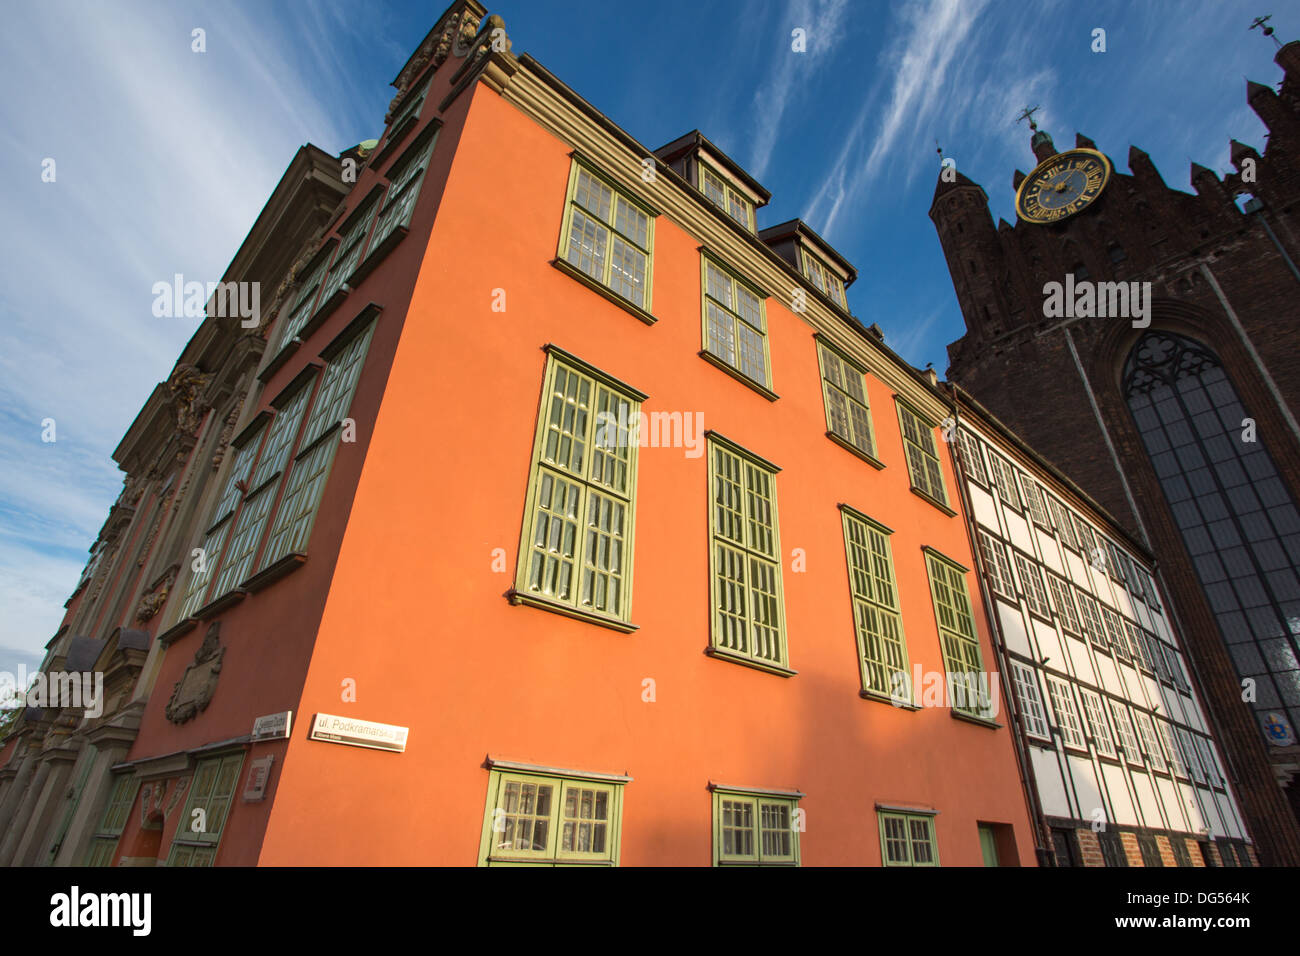 Détail de l'architecture classique dans la vieille ville de Gdansk, Pologne Banque D'Images